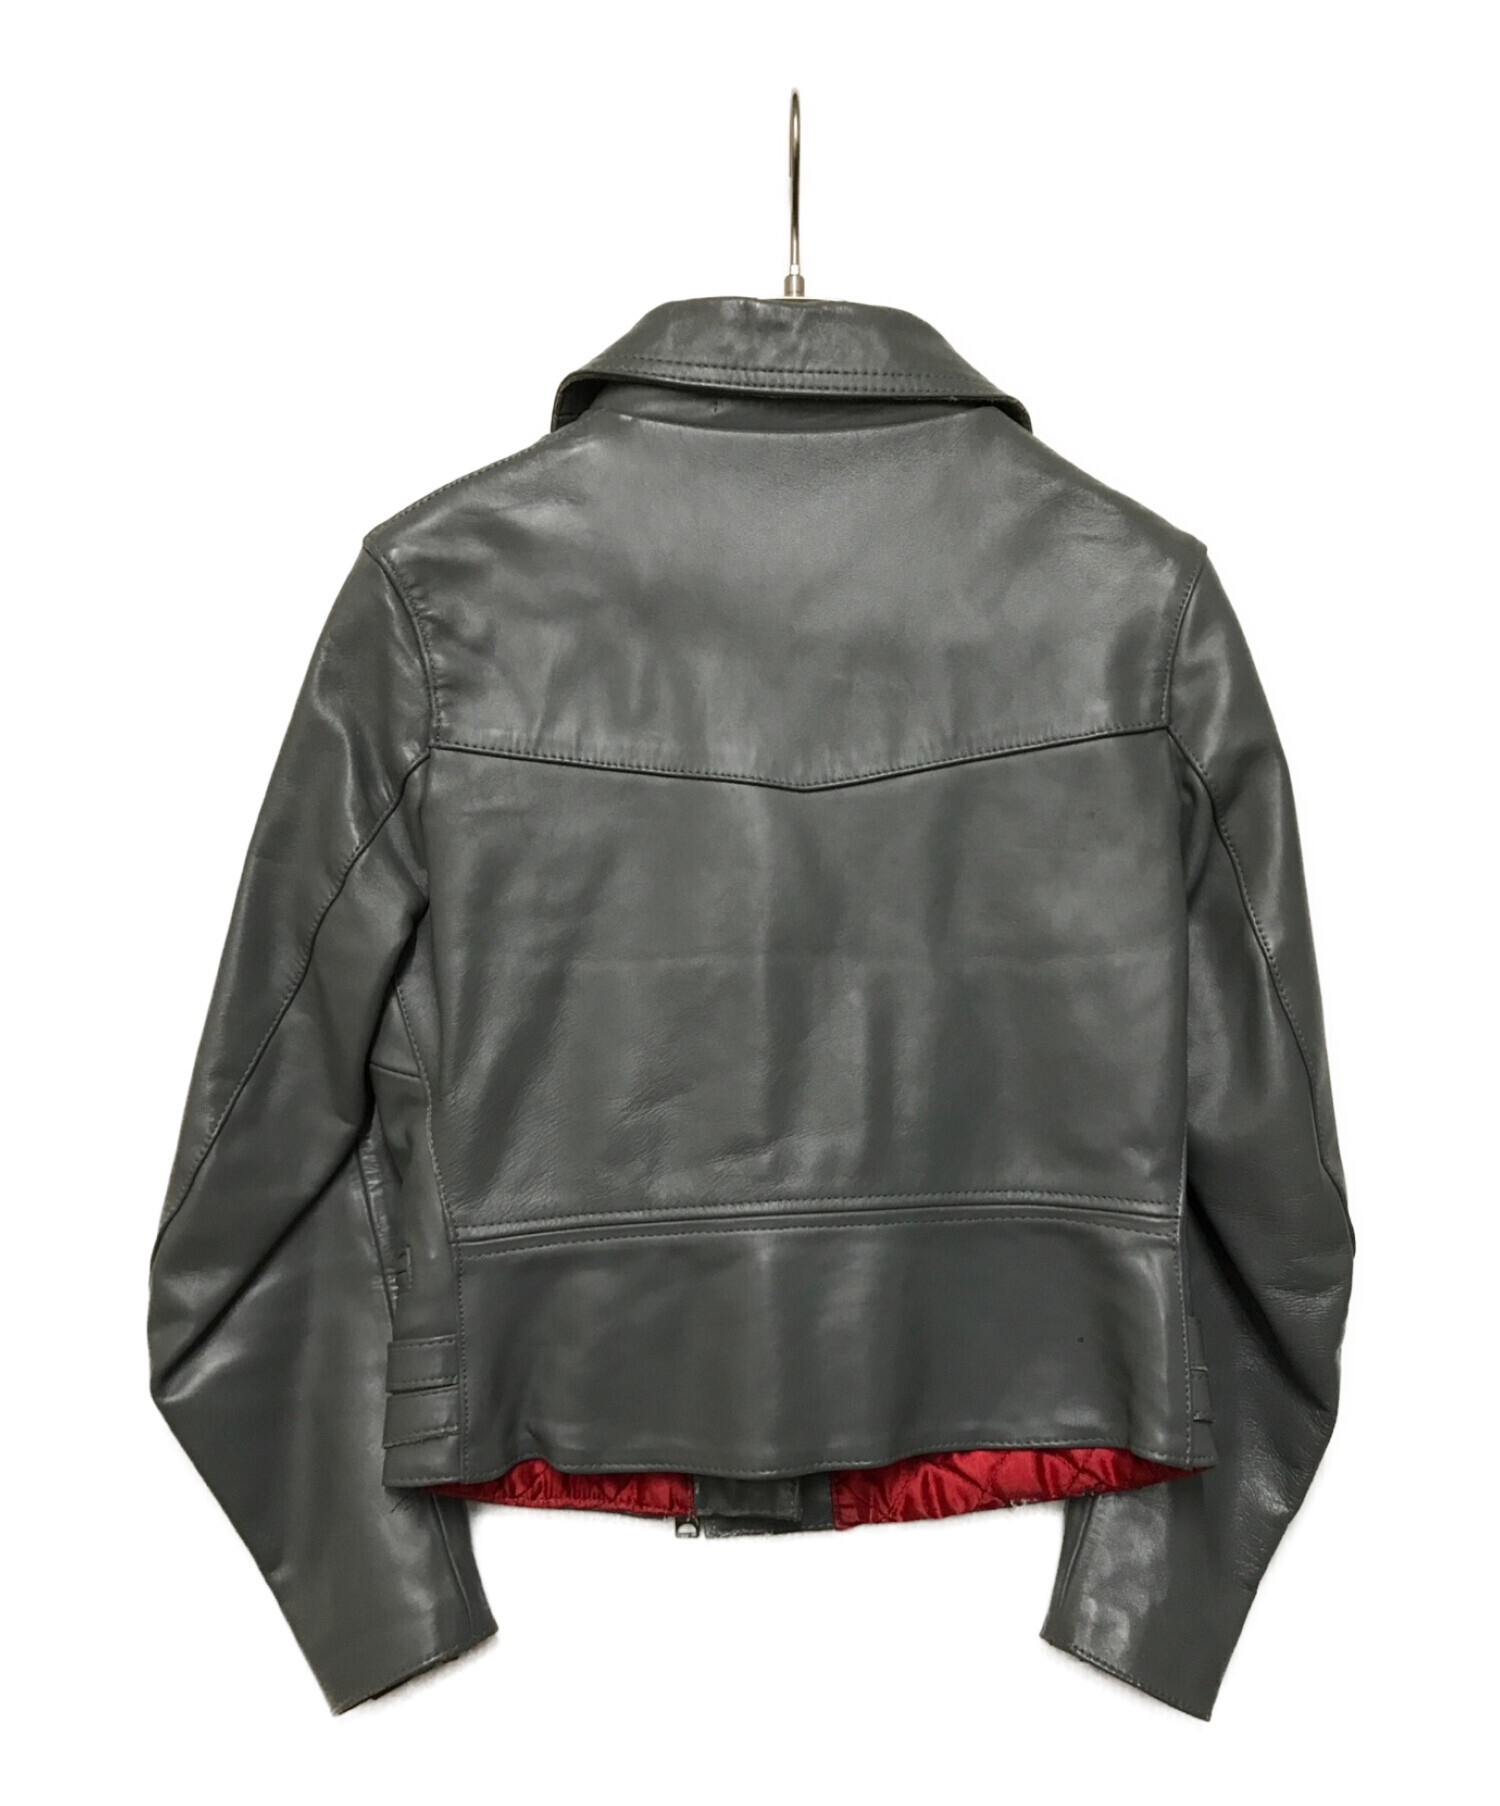 666 leather wear (666レザーウェア) ライダースジャケット グレー サイズ:34